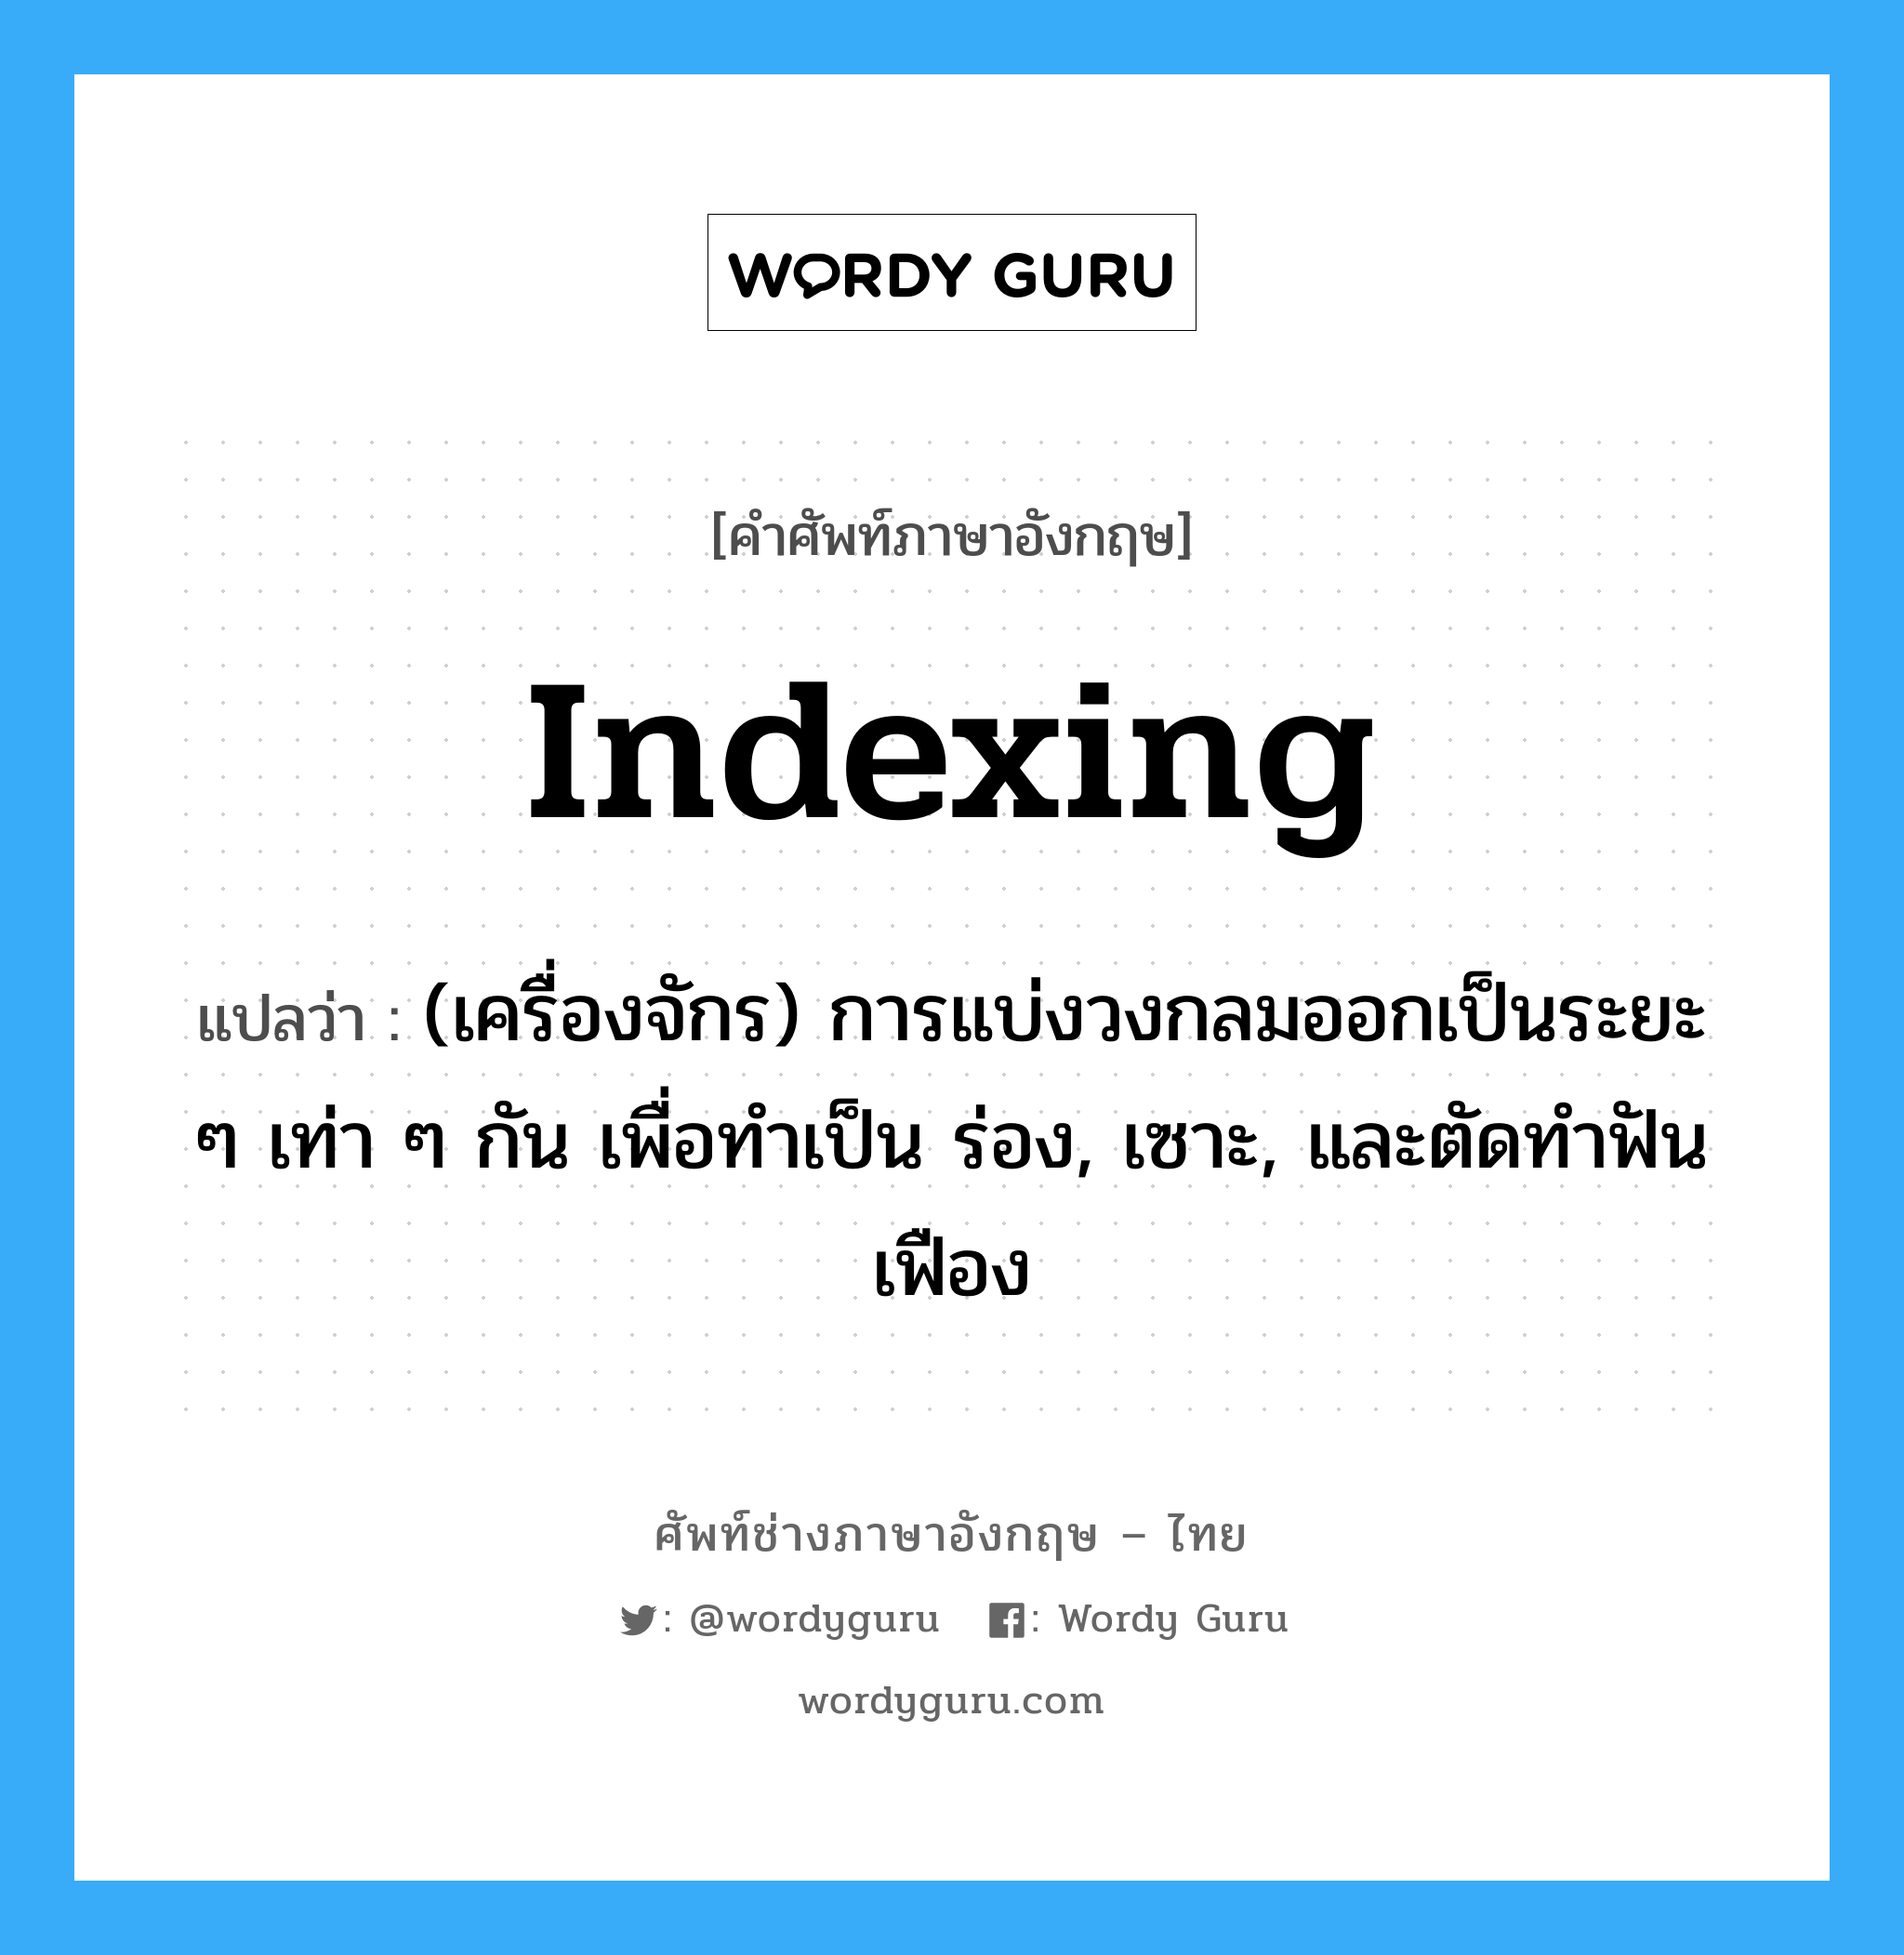 indexing แปลว่า?, คำศัพท์ช่างภาษาอังกฤษ - ไทย indexing คำศัพท์ภาษาอังกฤษ indexing แปลว่า (เครื่องจักร) การแบ่งวงกลมออกเป็นระยะ ๆ เท่า ๆ กัน เพื่อทำเป็น ร่อง, เซาะ, และตัดทำฟันเฟือง